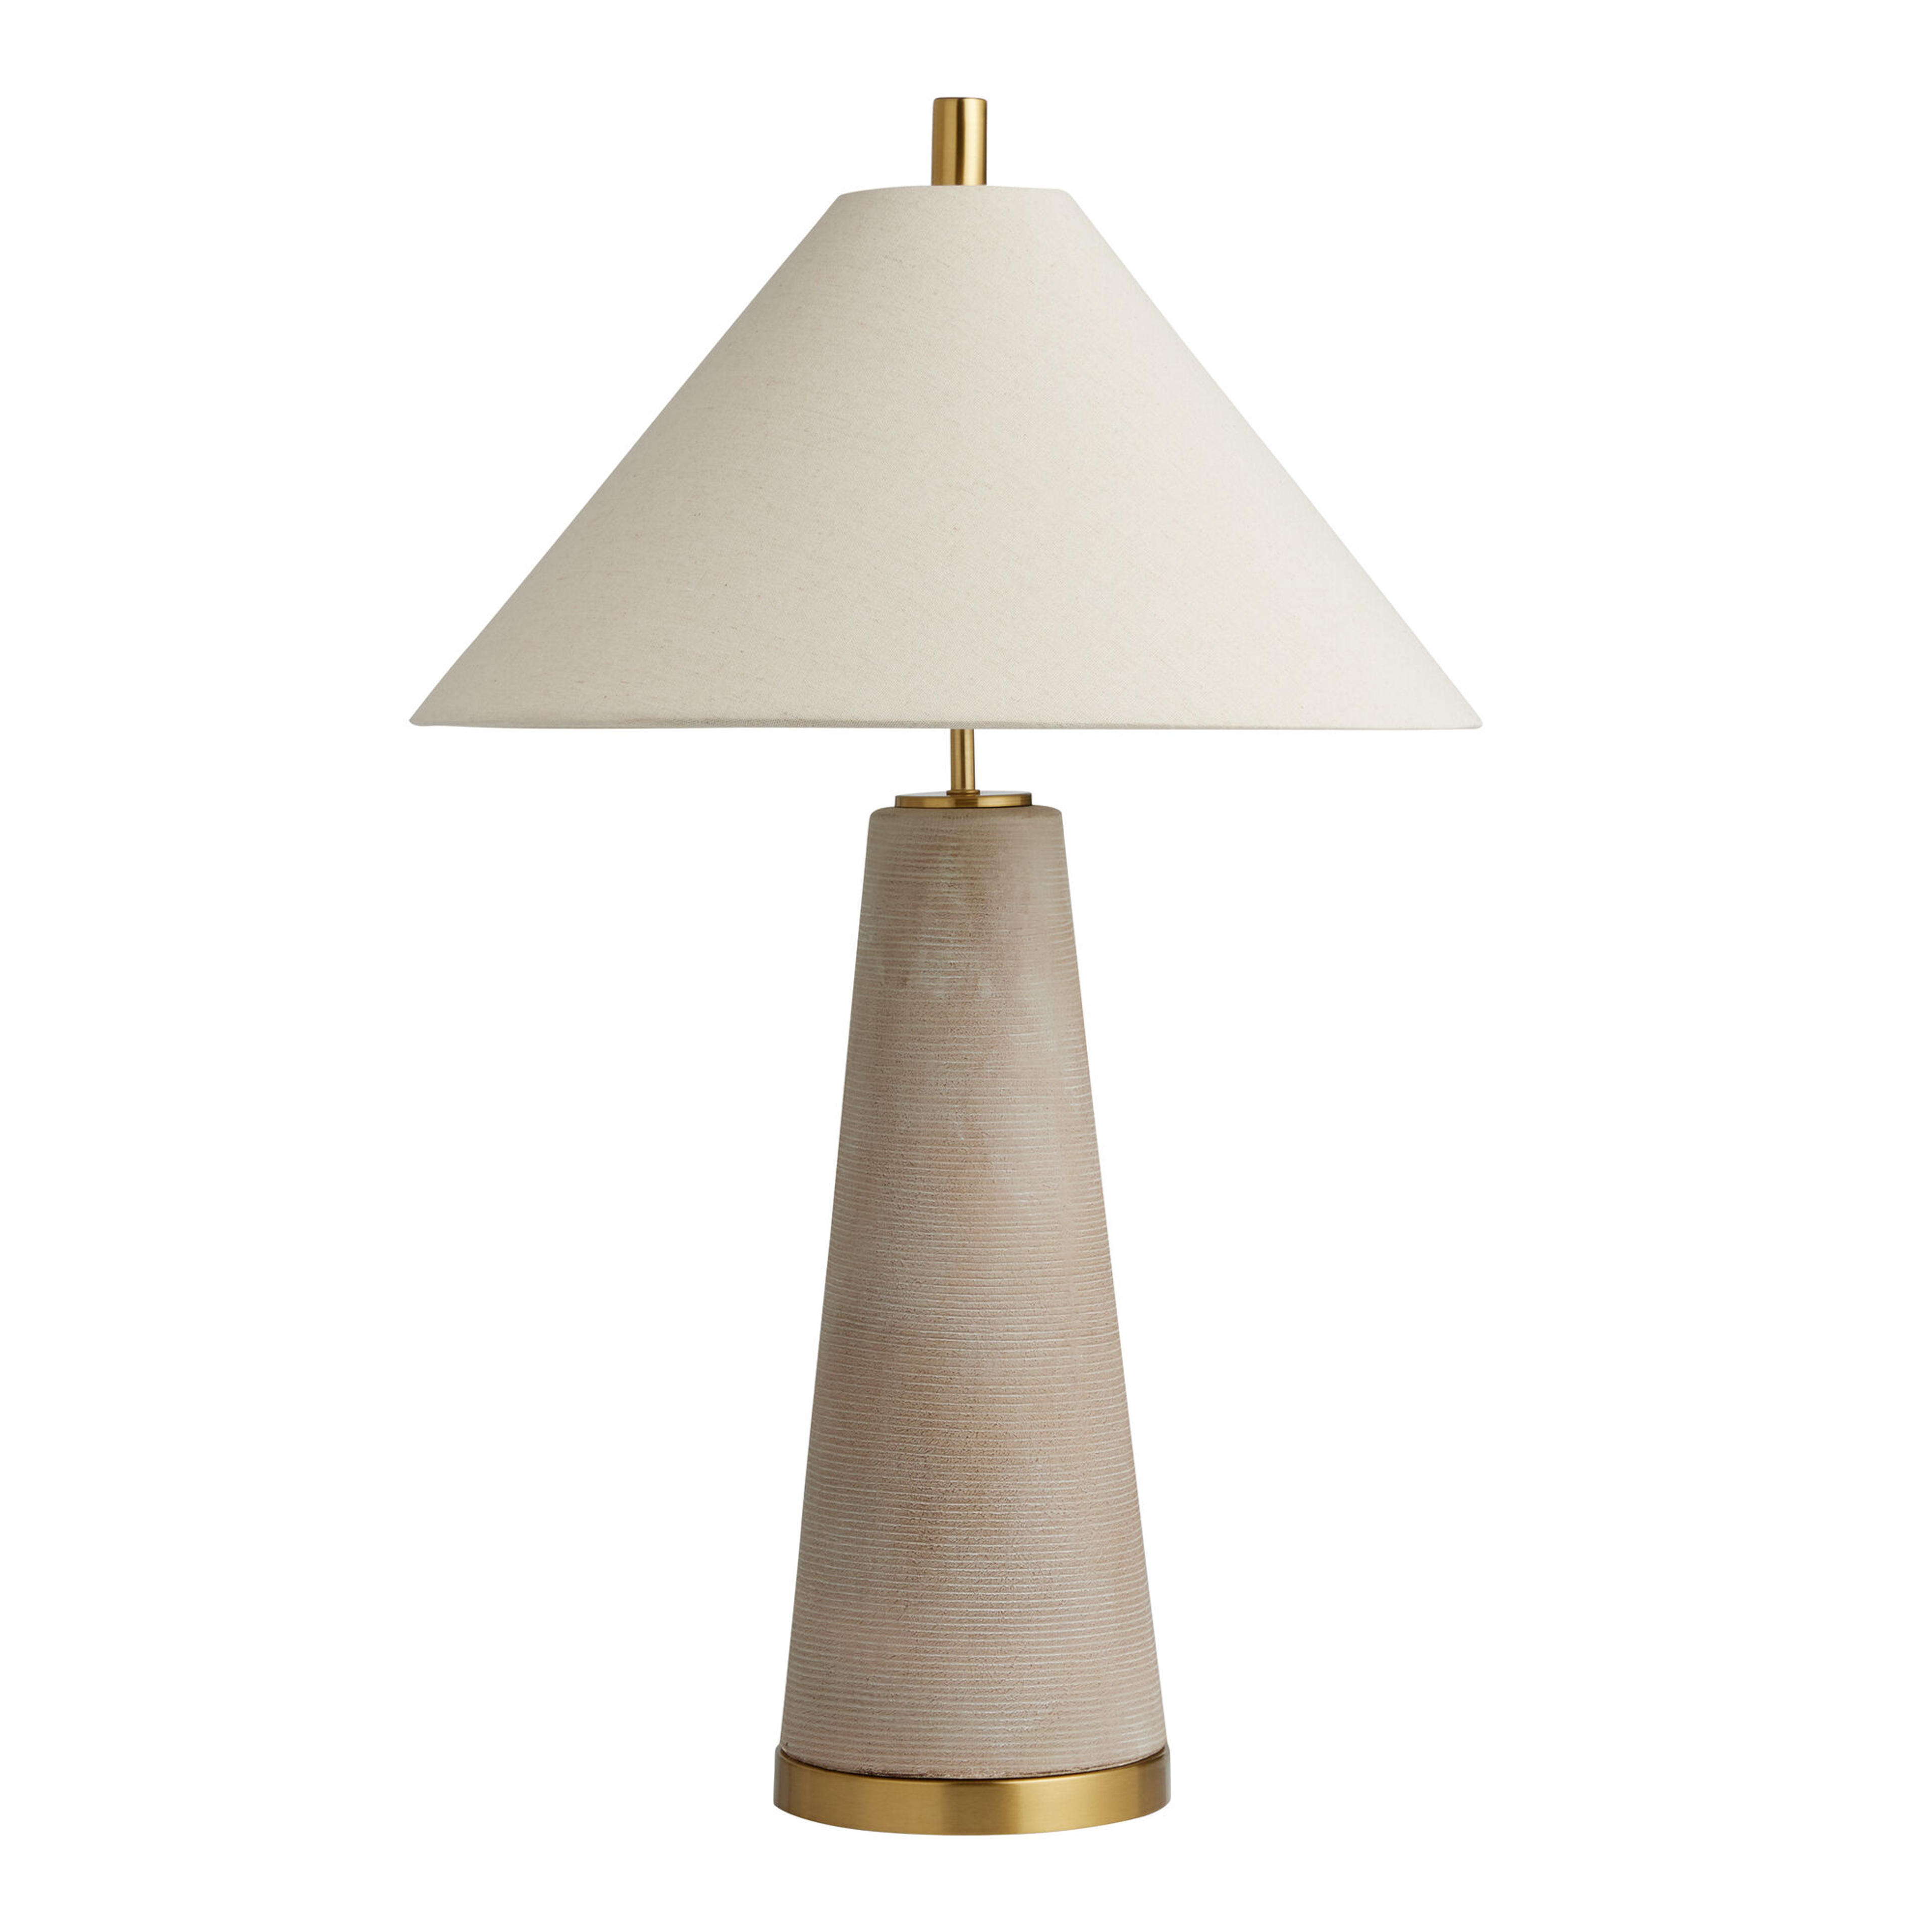 Petra Oversized Gray Ceramic Empire Shade Table Lamp - World Market